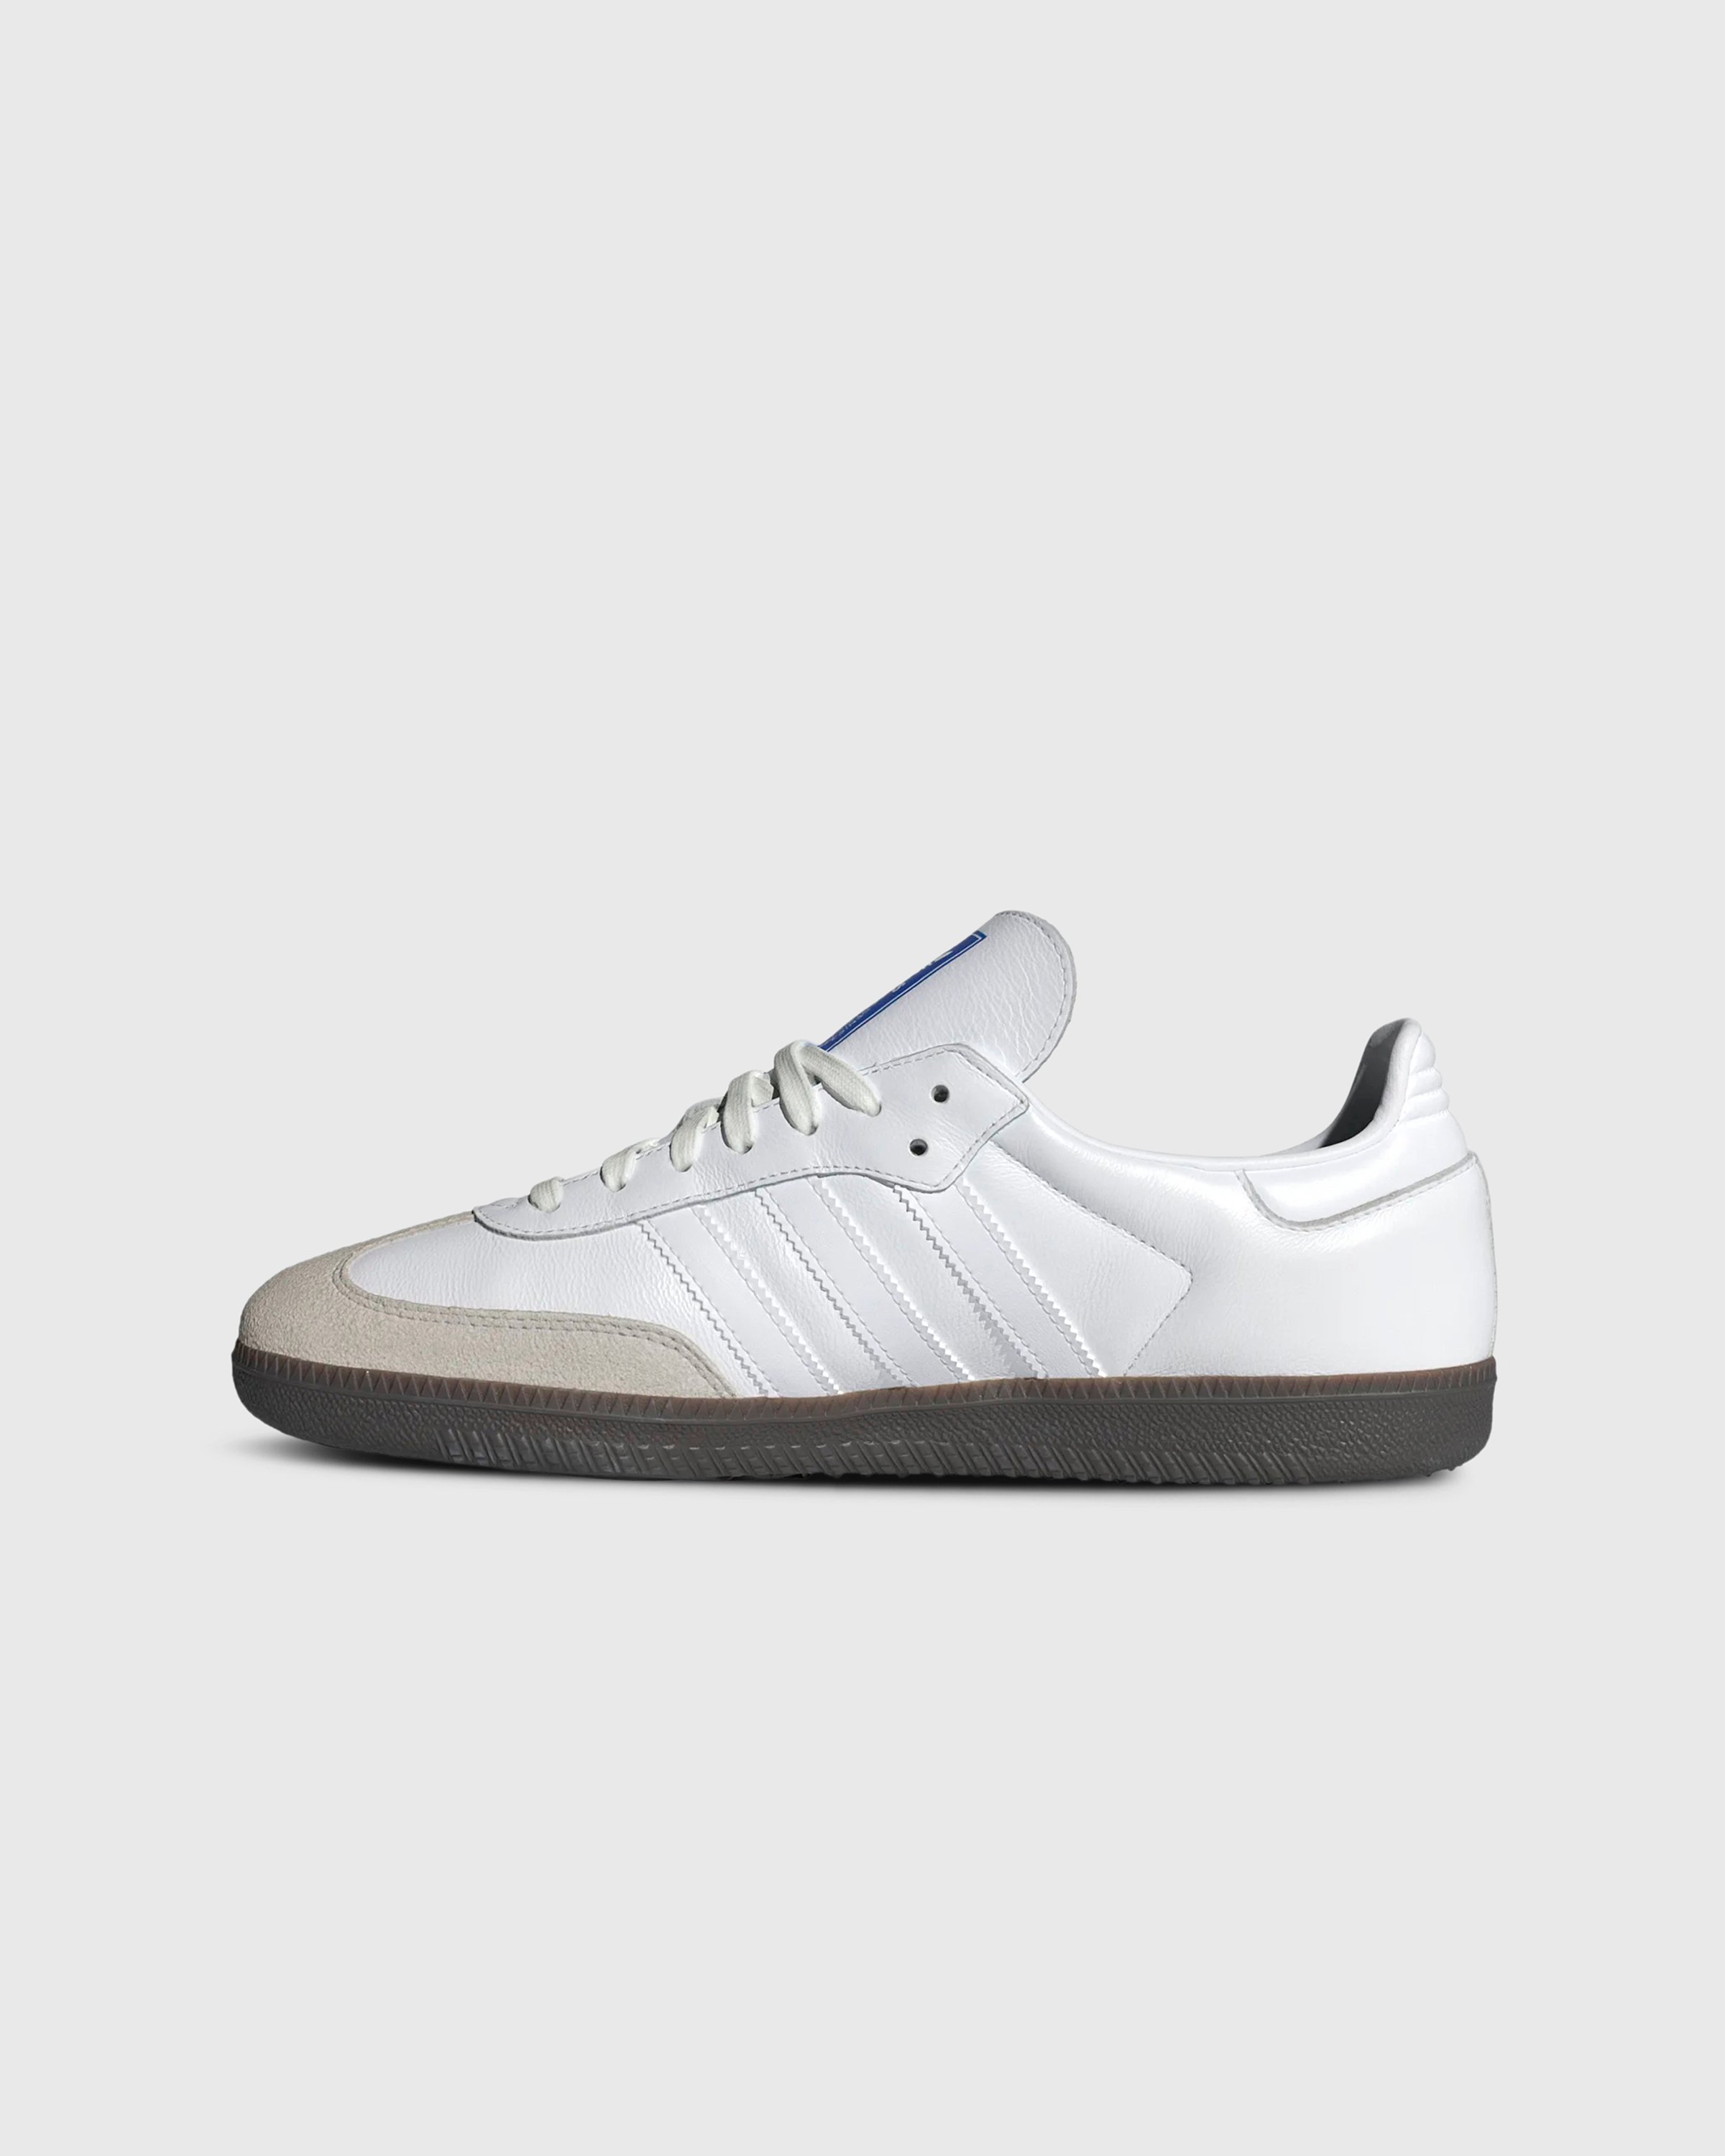 Adidas - SAMBA OG            FTWWHT/FTWWHT/GUM5 - Footwear - White - Image 2